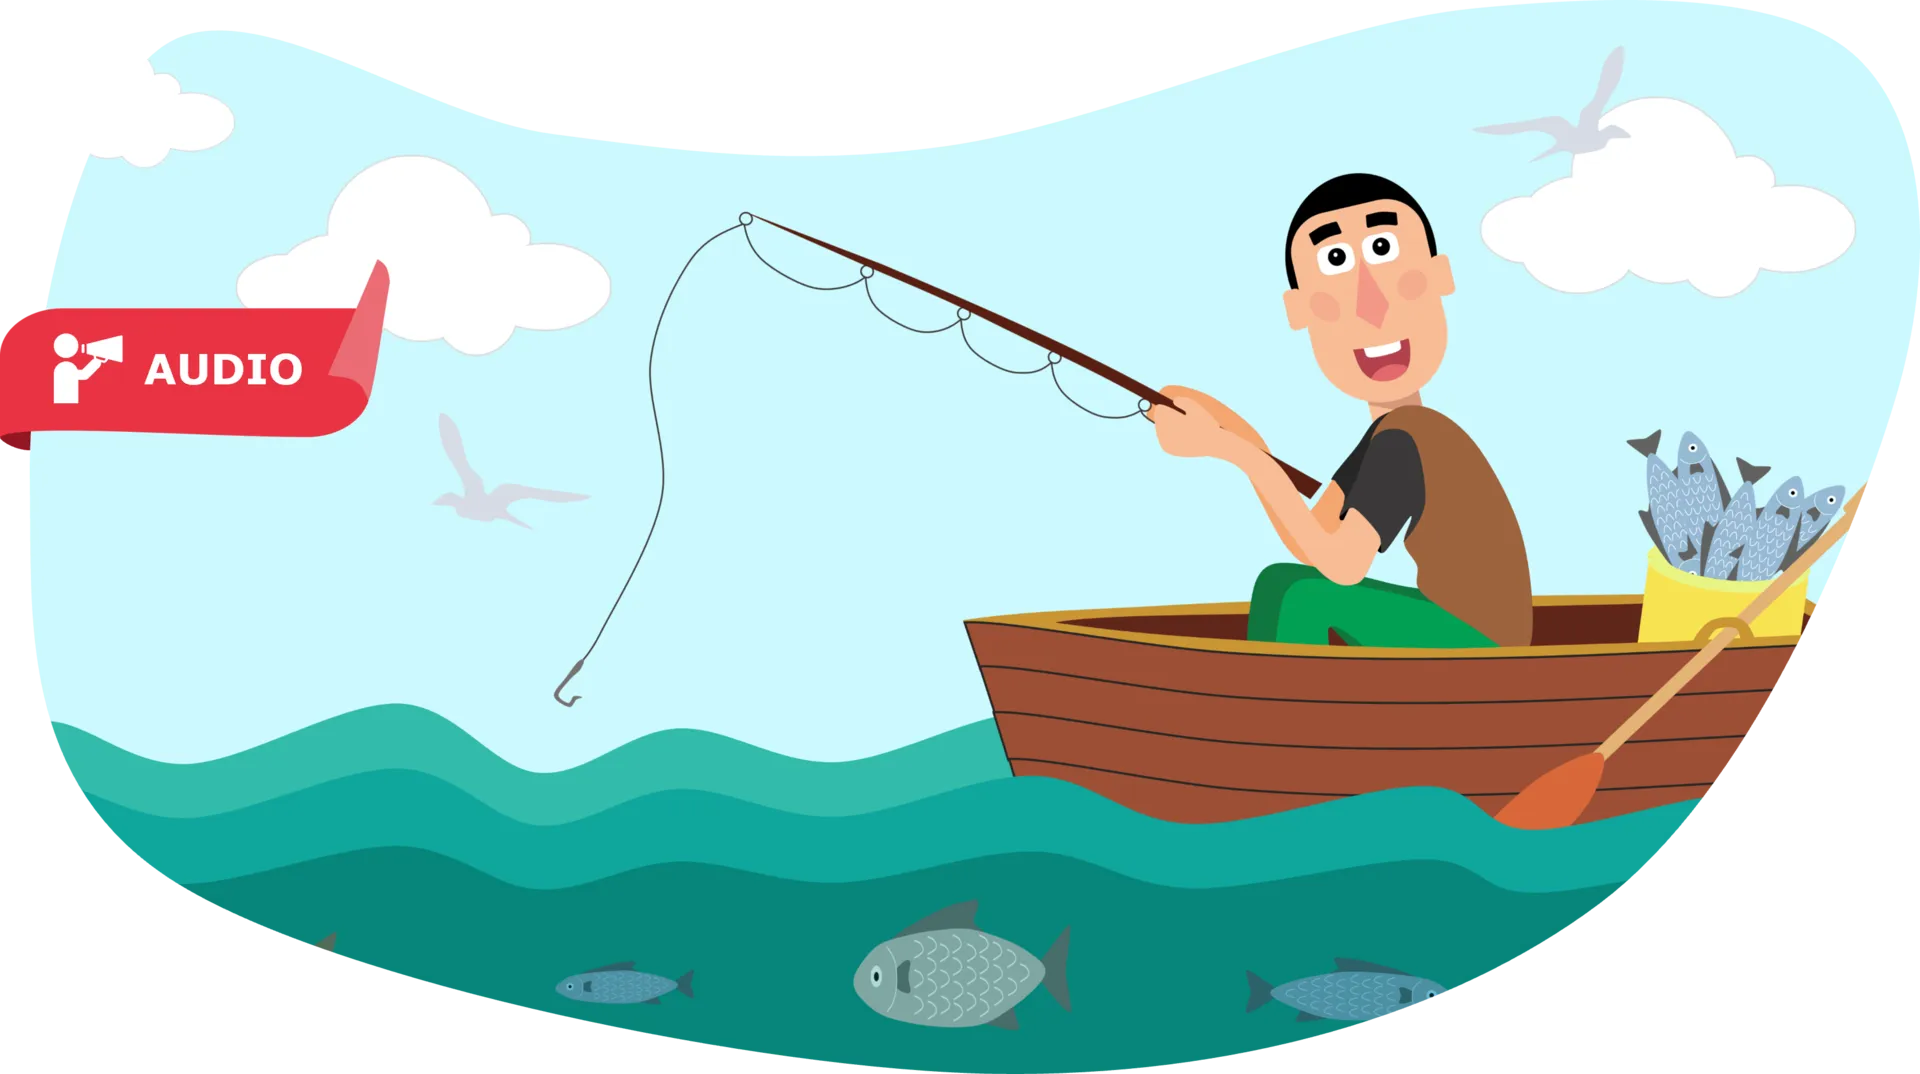 IELTS Speaking Part 1: Fishing